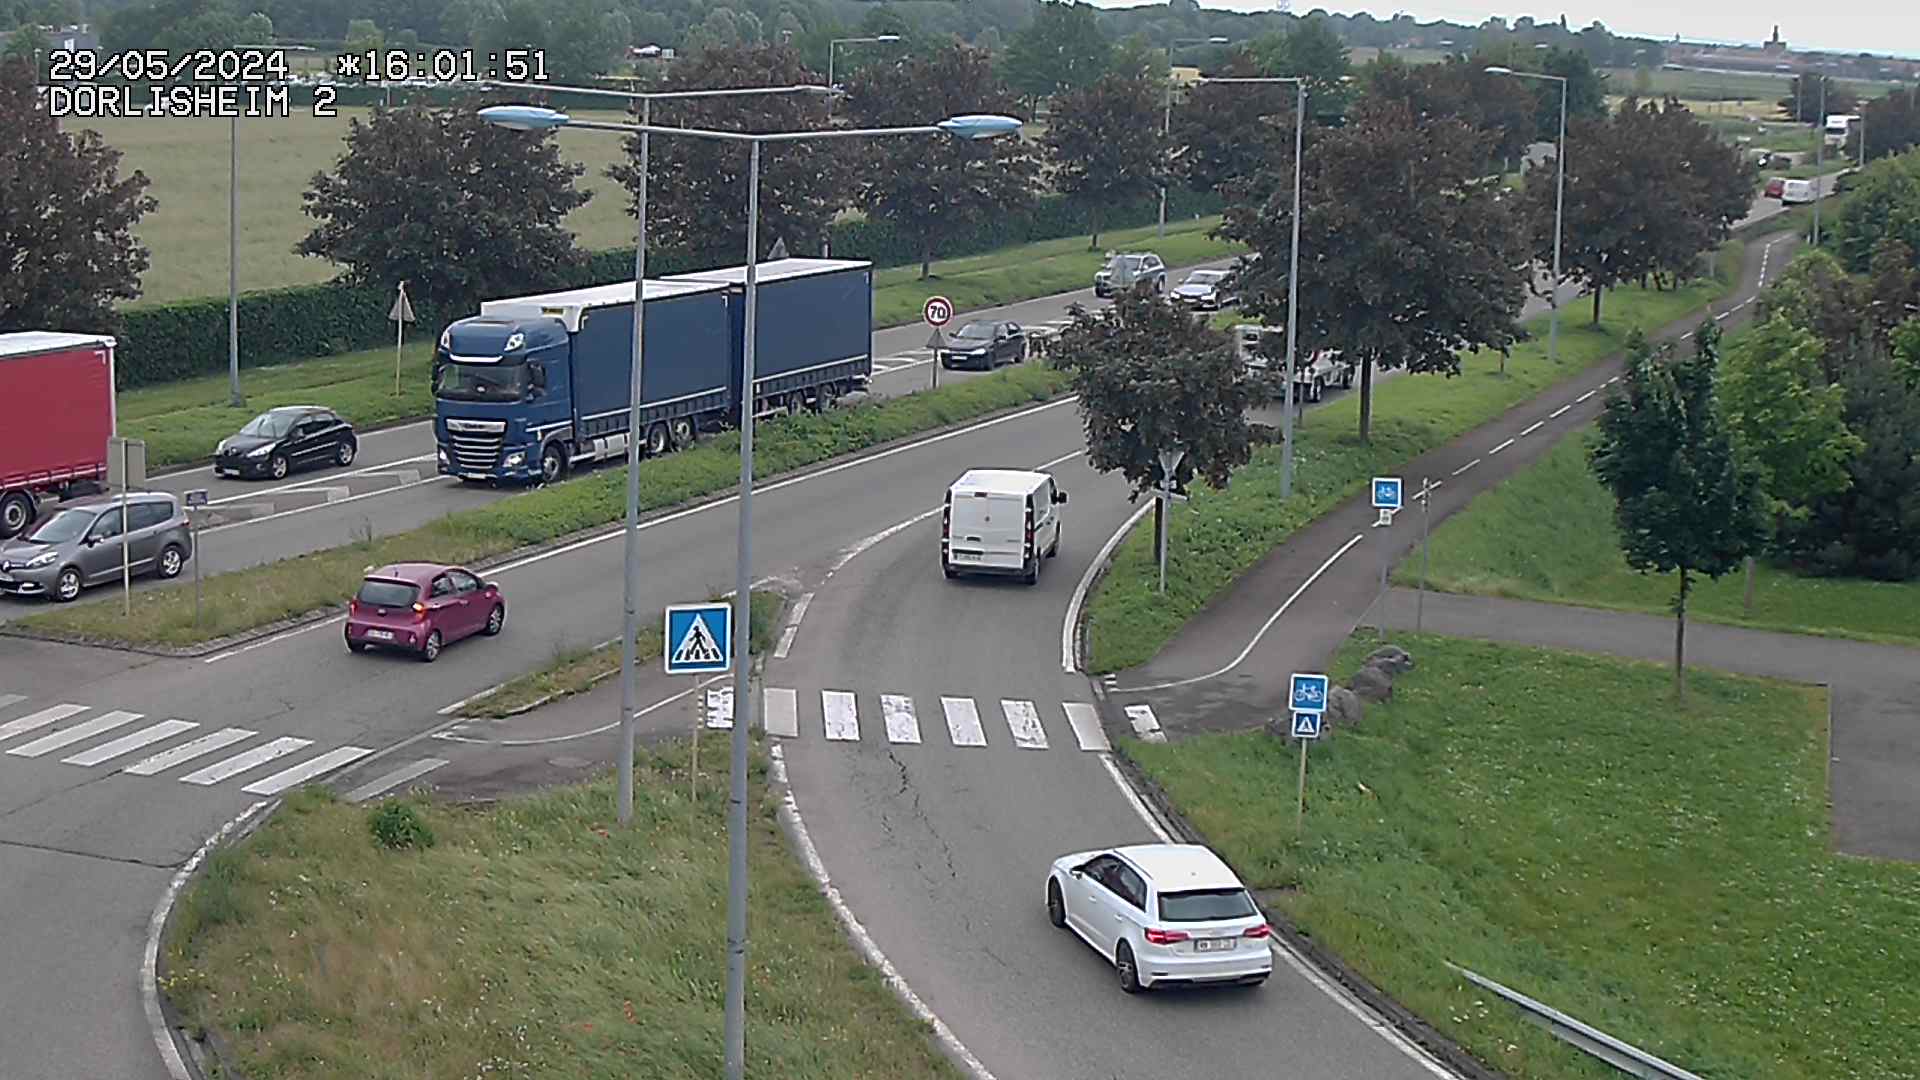 <h2>Webcam à Dorlisheim, au sud de Molsheim, au niveau du rond-point menant à l'A352. Caméra située à la jonction entre la D392, la D500 et la D2422. Vue orientée vers Altorf et Strasbourg</h2>